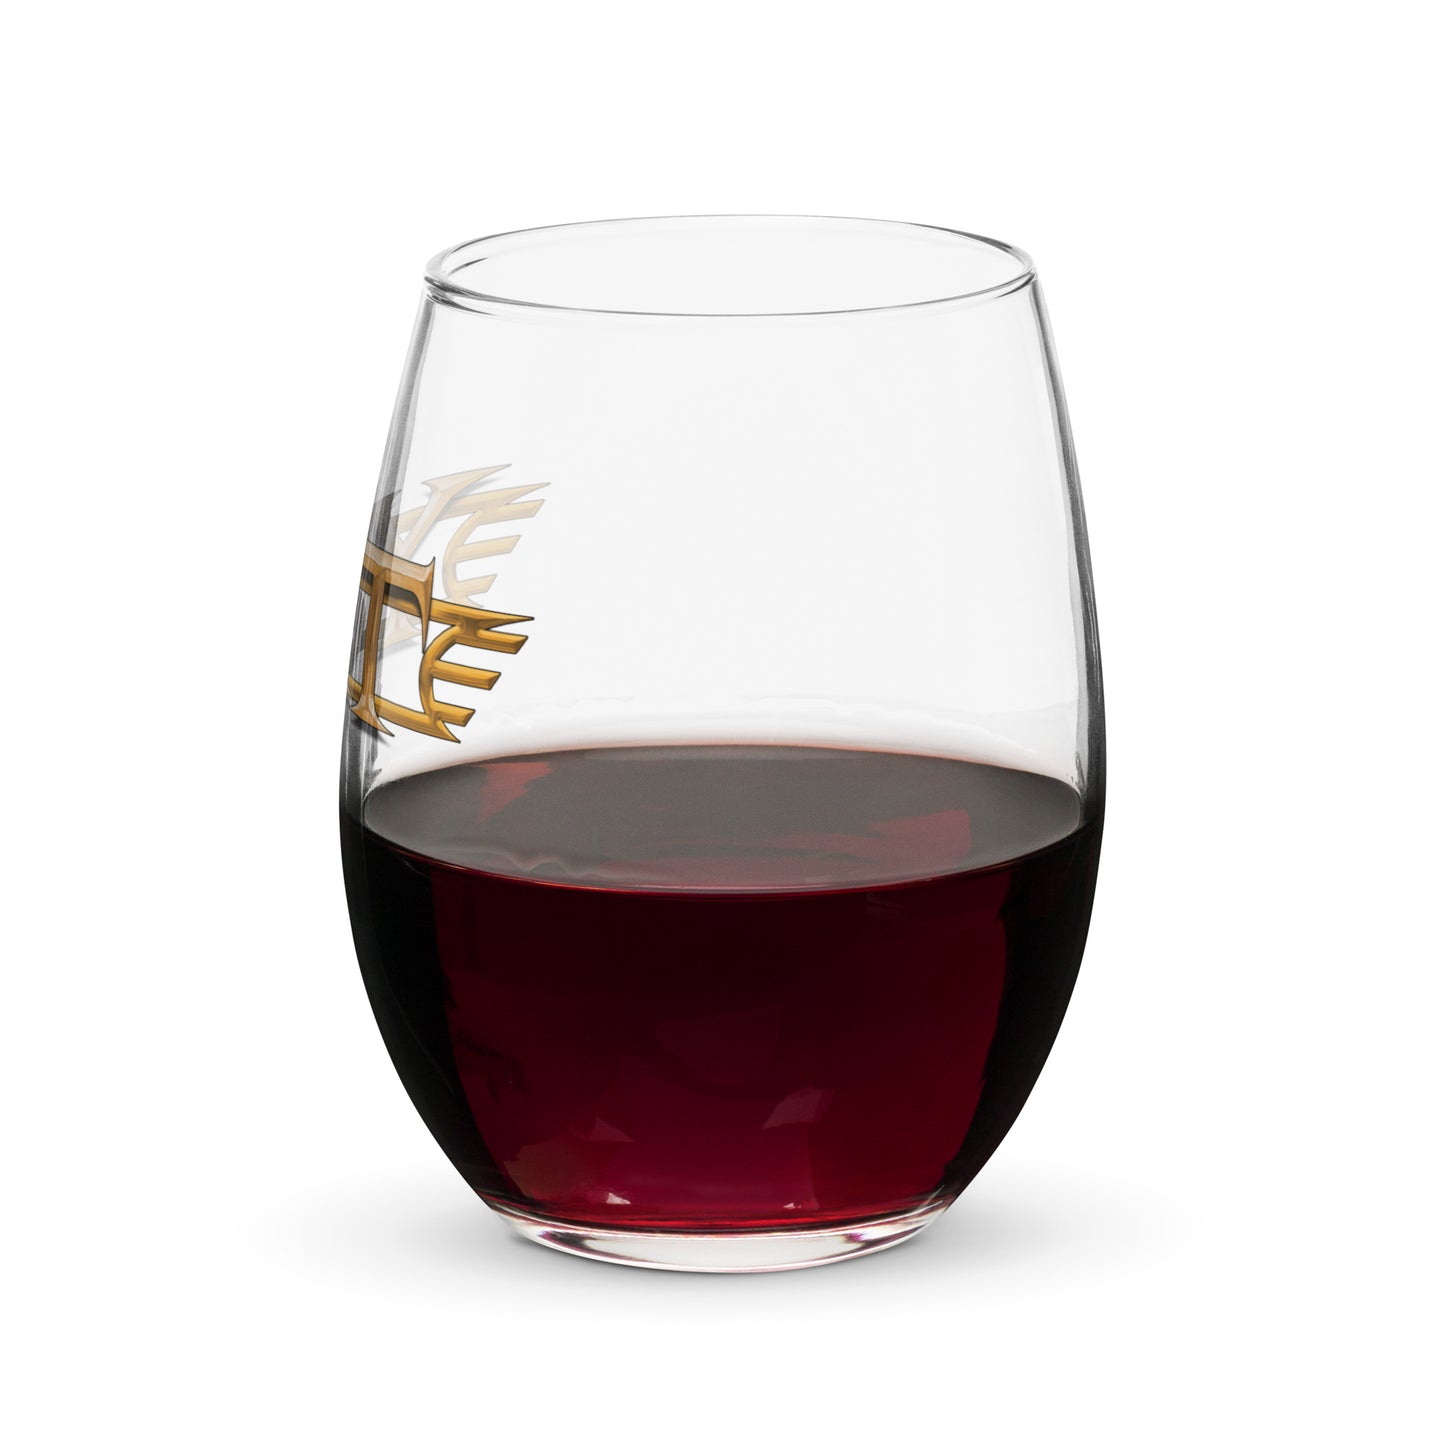 Y&T Logo Stemless Wine Glass